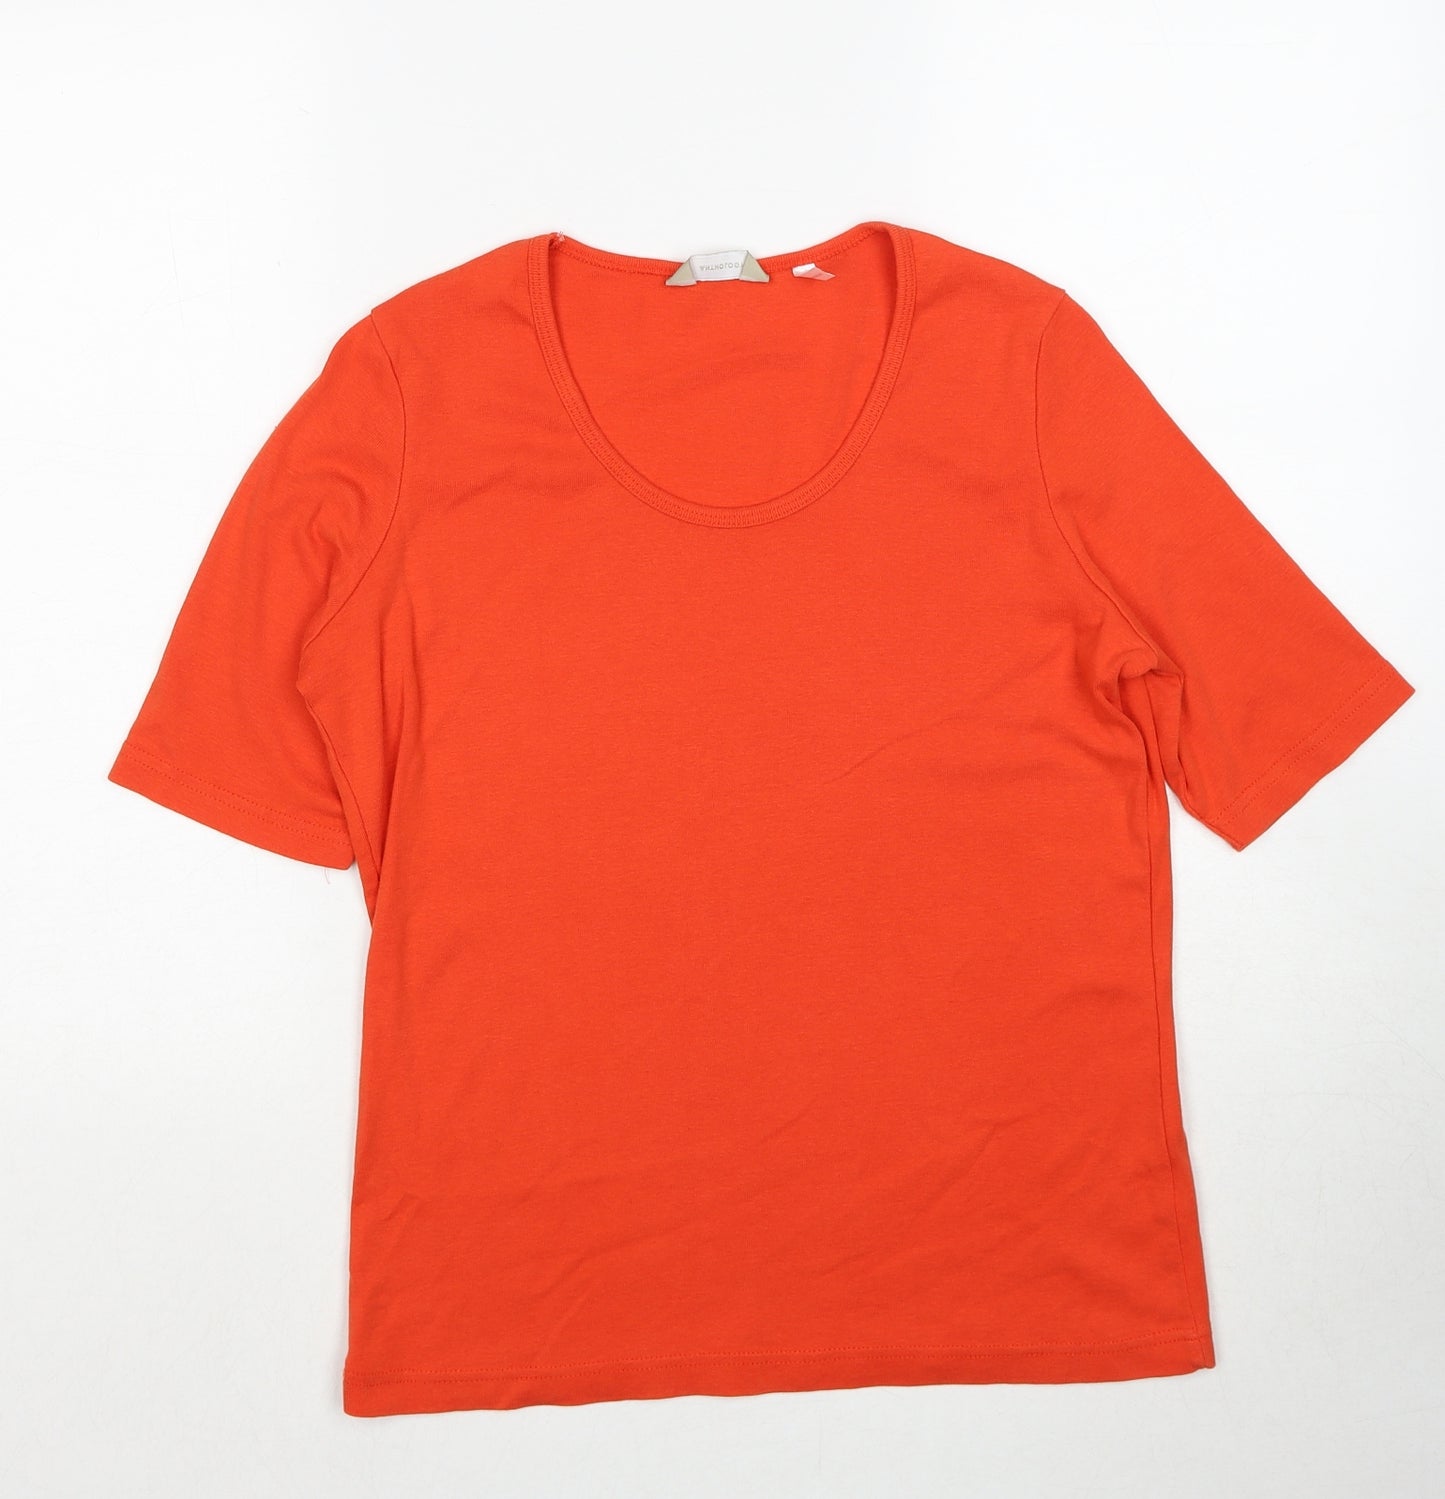 Anthology Womens Orange Cotton Basic T-Shirt Size 12 Round Neck - Size 12-14